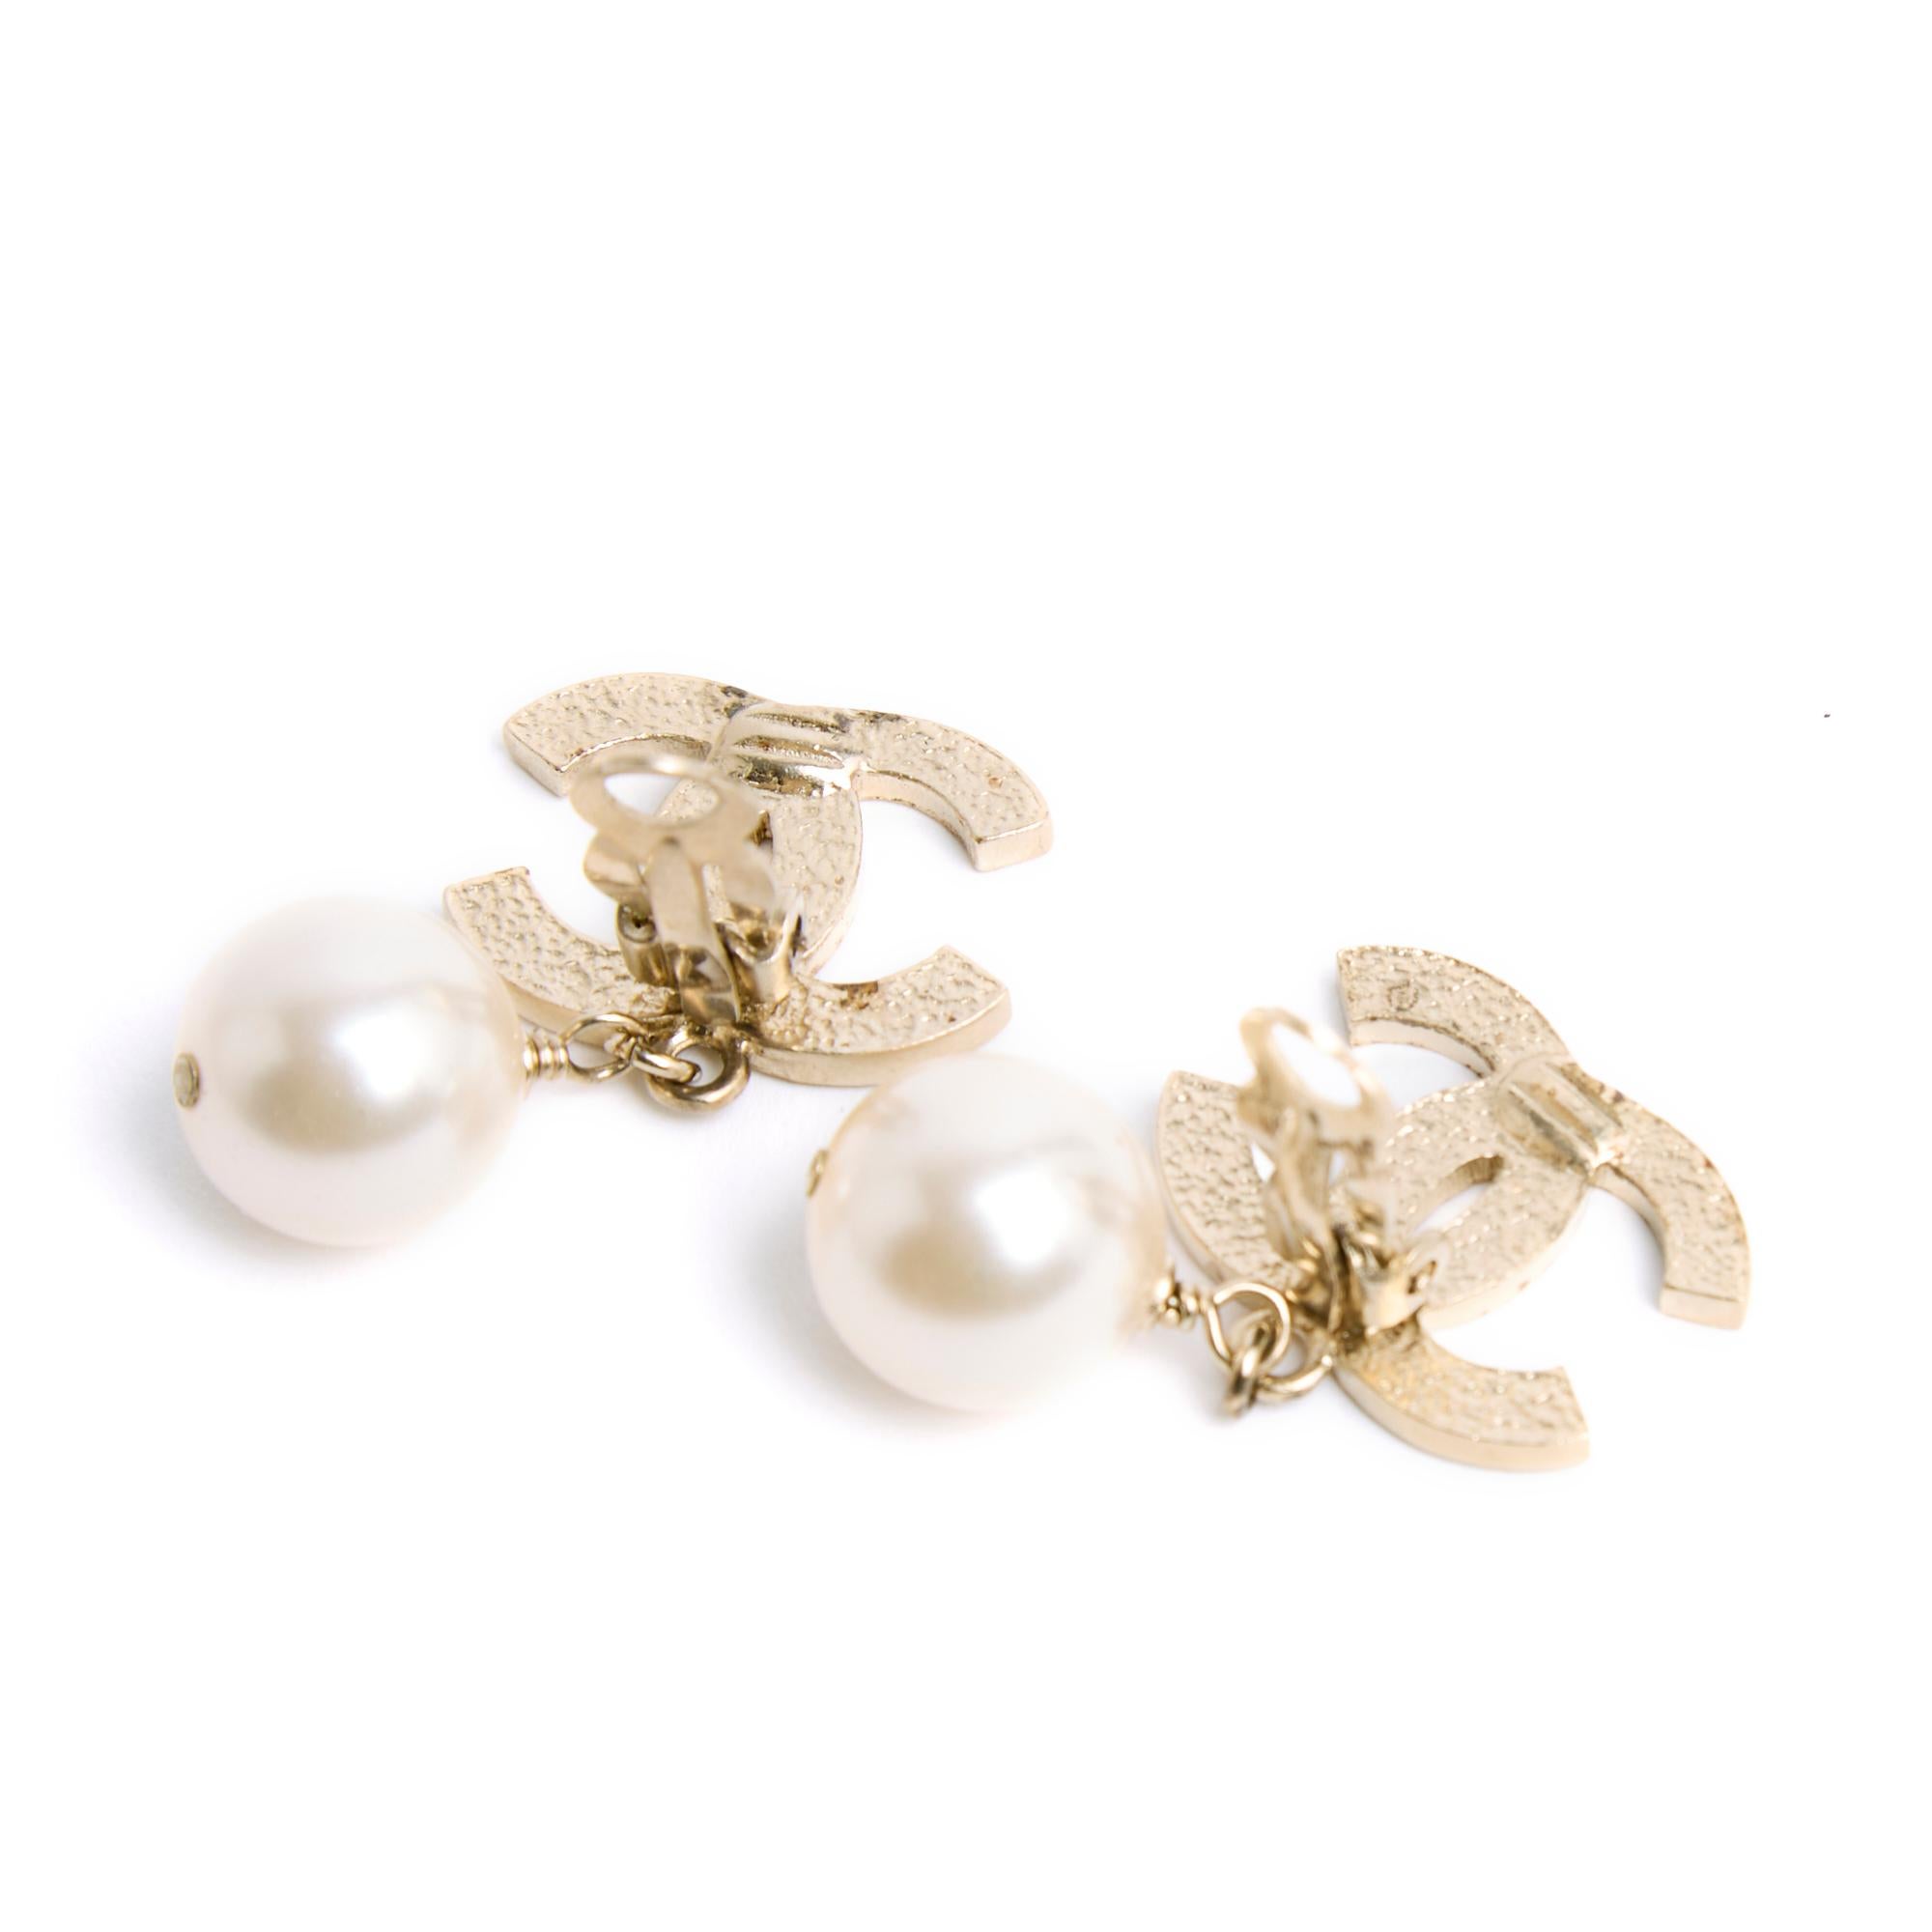 Chanel Clip-Ohrringe, bestehend aus einem großen Chanel CC-Logo aus fein gestepptem, goldenem Metall und einem runden, ausgefallenen Perlen-Anhänger. Breite 2 cm x Höhe 3,45 cm. Die Ohrringe sind in sehr gutem Zustand, klassisch schick und leuchtend